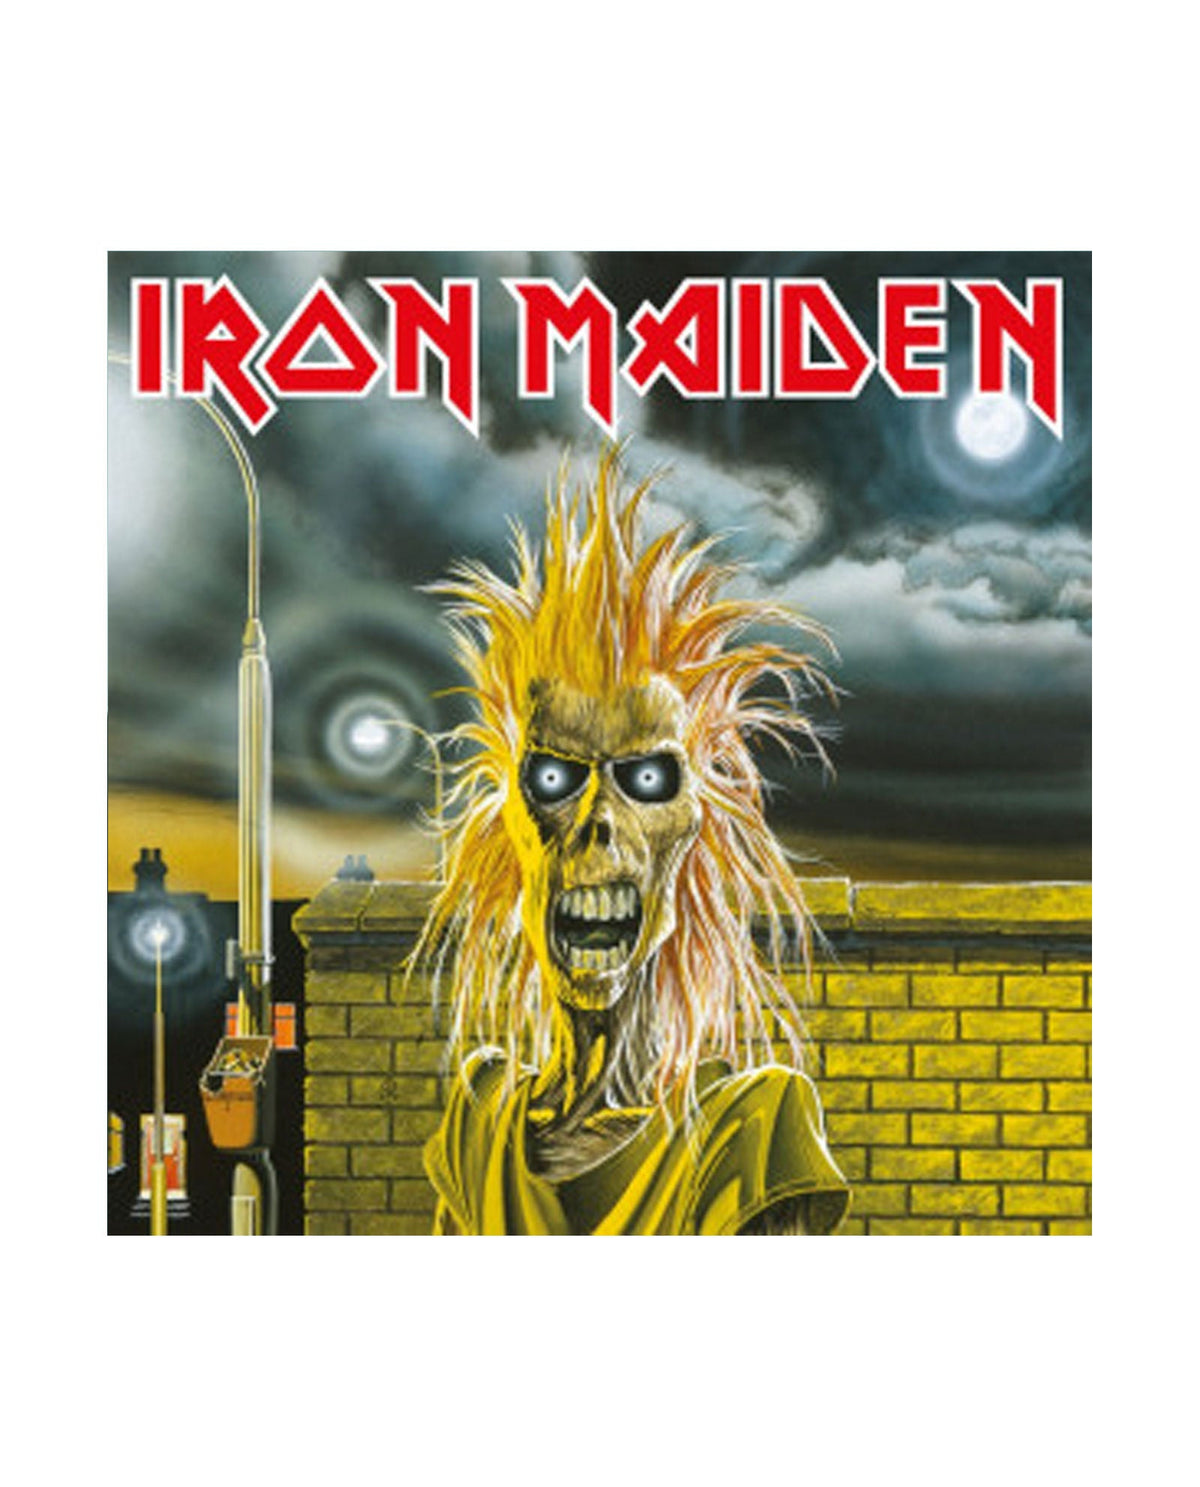 Iron Maiden - LP Vinilo "Iron Maiden" - D2fy · Rocktud - Rocktud